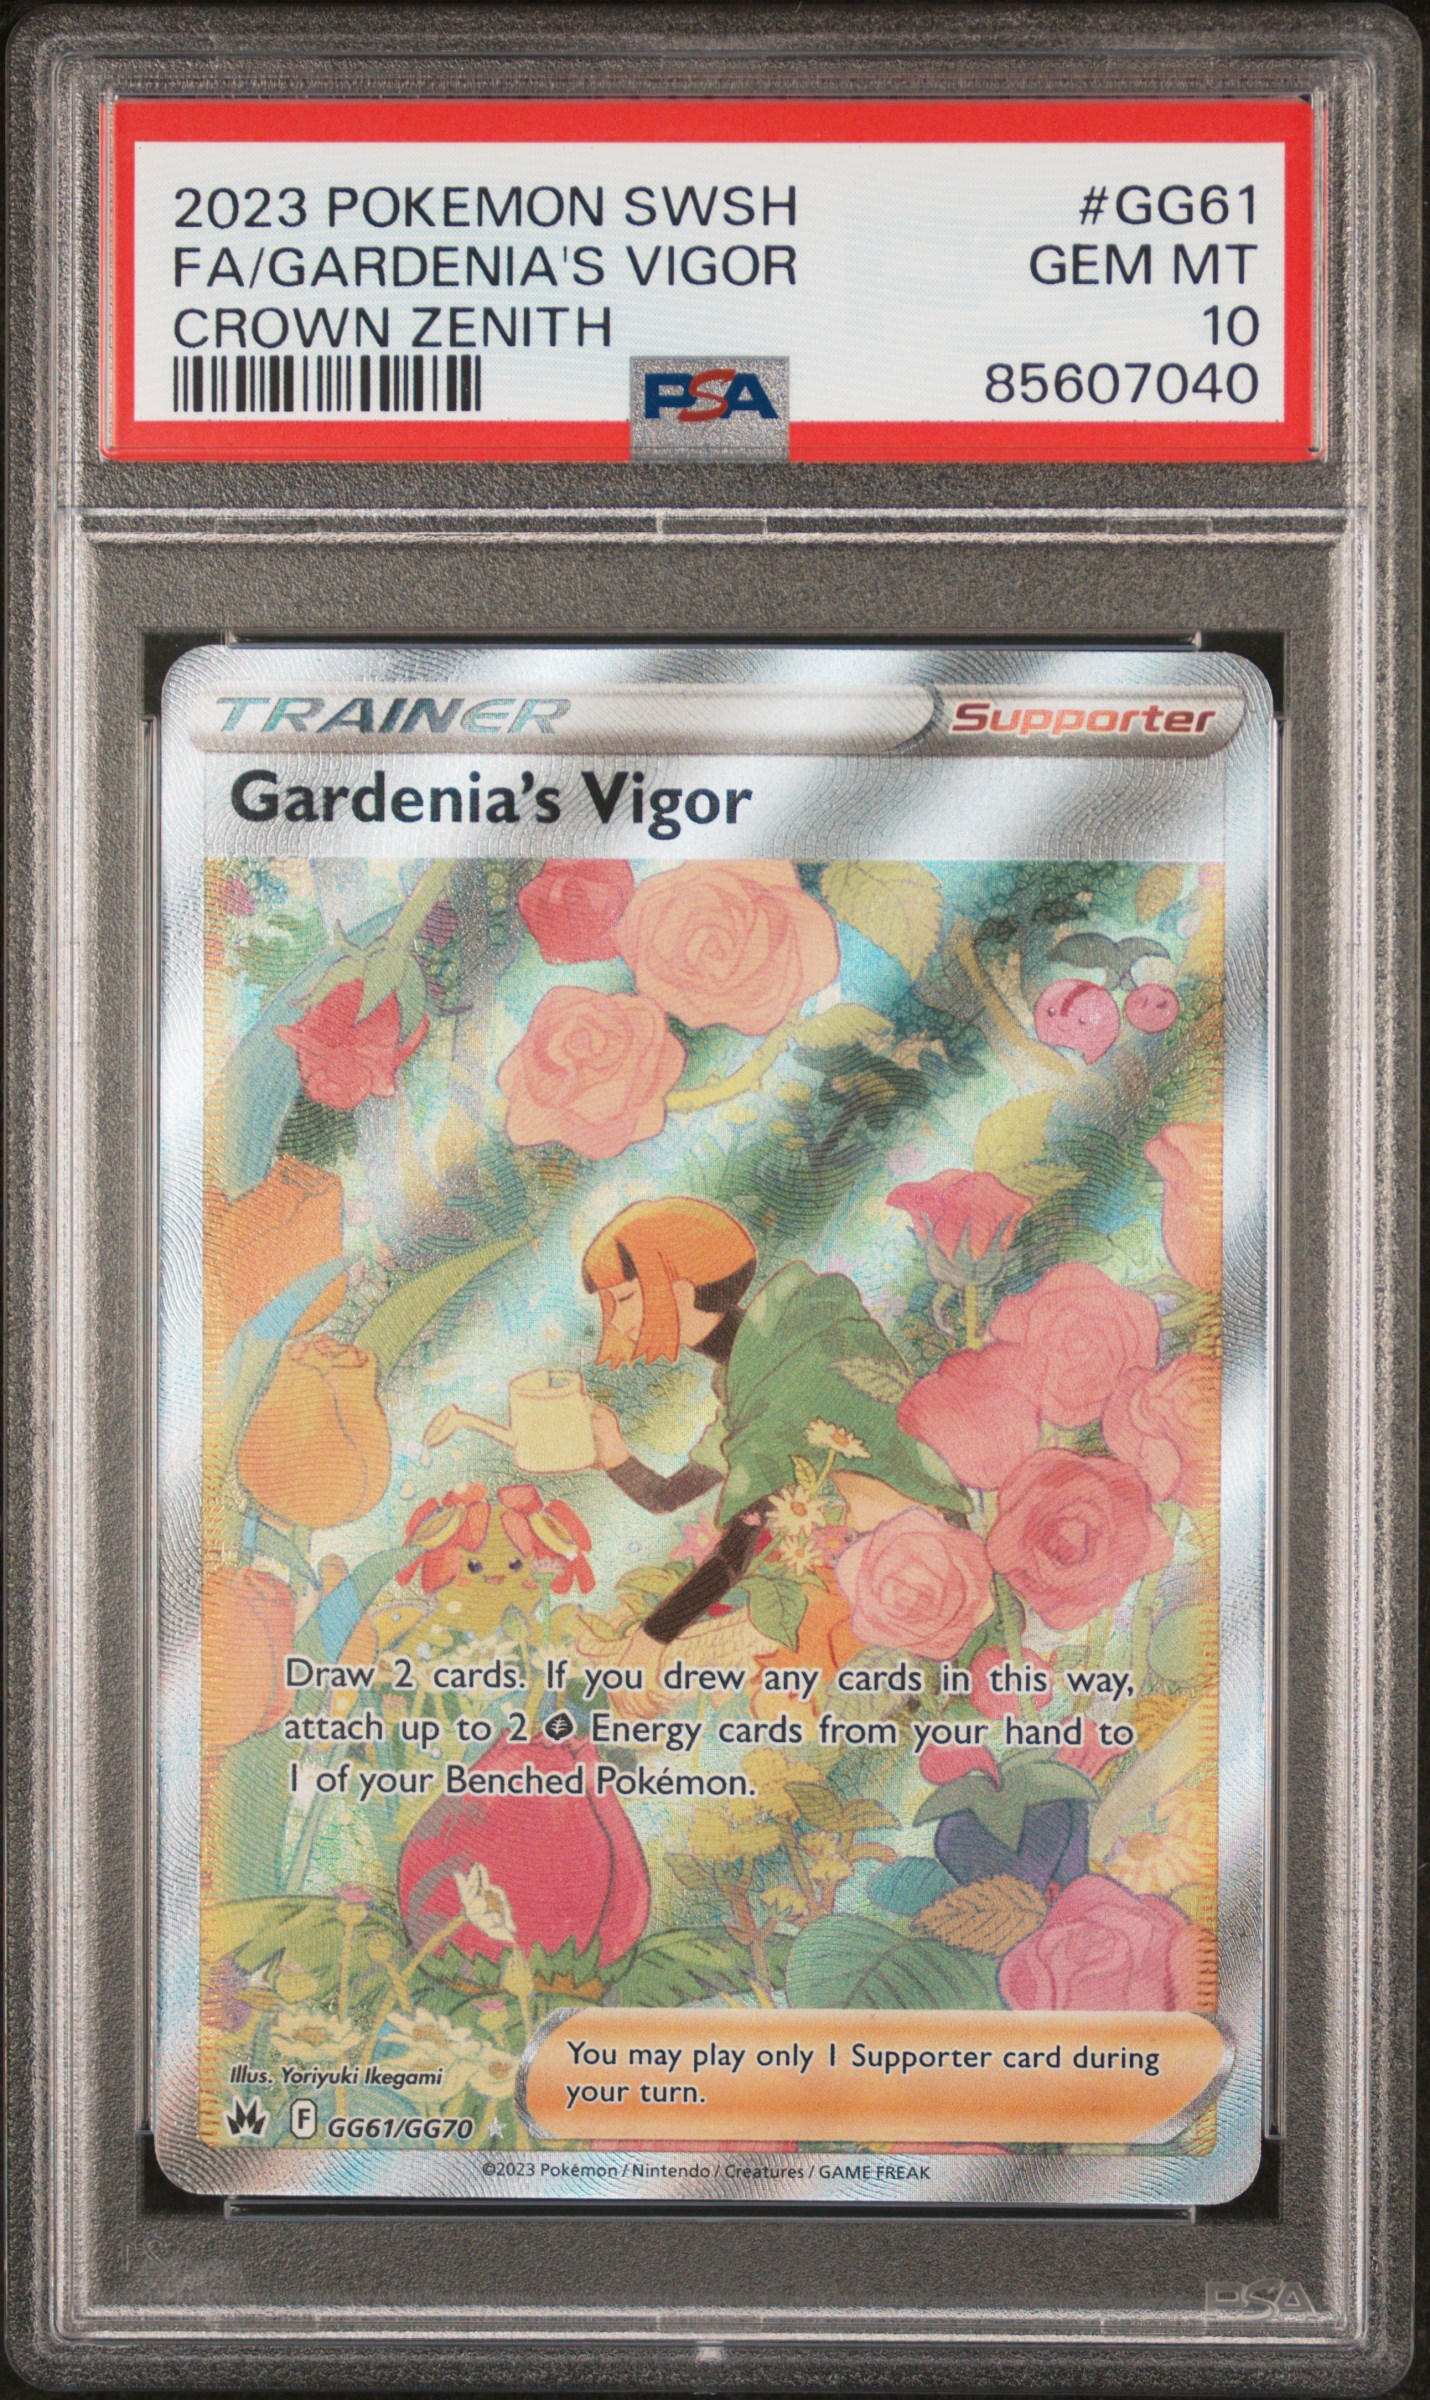 2023 Pokemon Sword and Shield Crown Zenith Gg61 Full Art/Gardenia's Vigor – PSA GEM MT 10